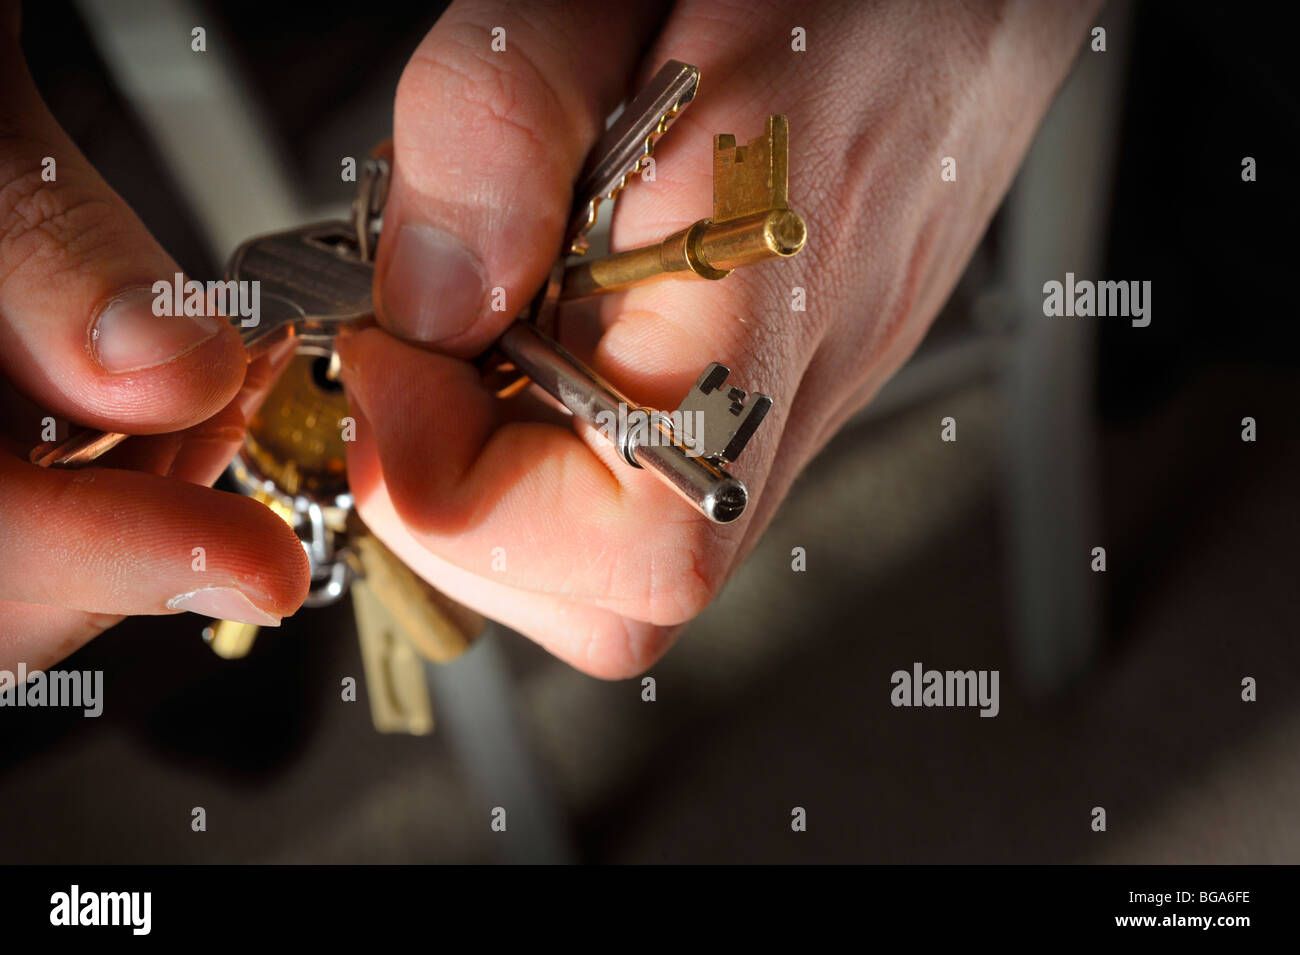 Sicherheit zu Hause: ein Schlüsselbund in die Hände des Mannes. Bild Jim Holden. Stockfoto